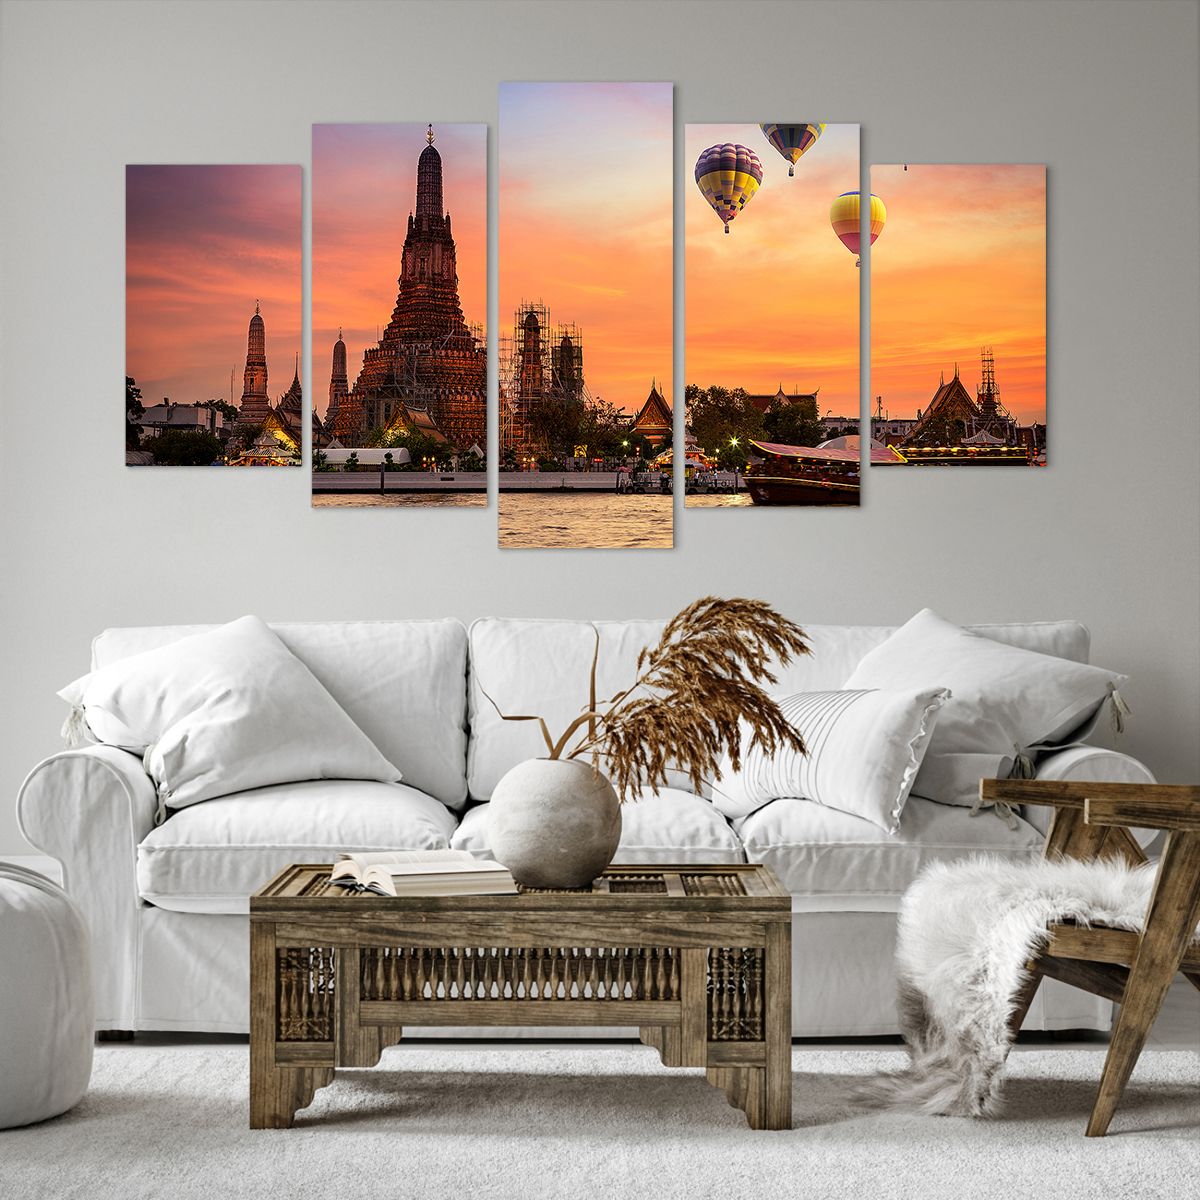 Obrazy na płótnie Bangkok, Obrazy na płótnie Świątynia Świtu, Obrazy na płótnie Tajlandia, Obrazy na płótnie Balony, Obrazy na płótnie Azja